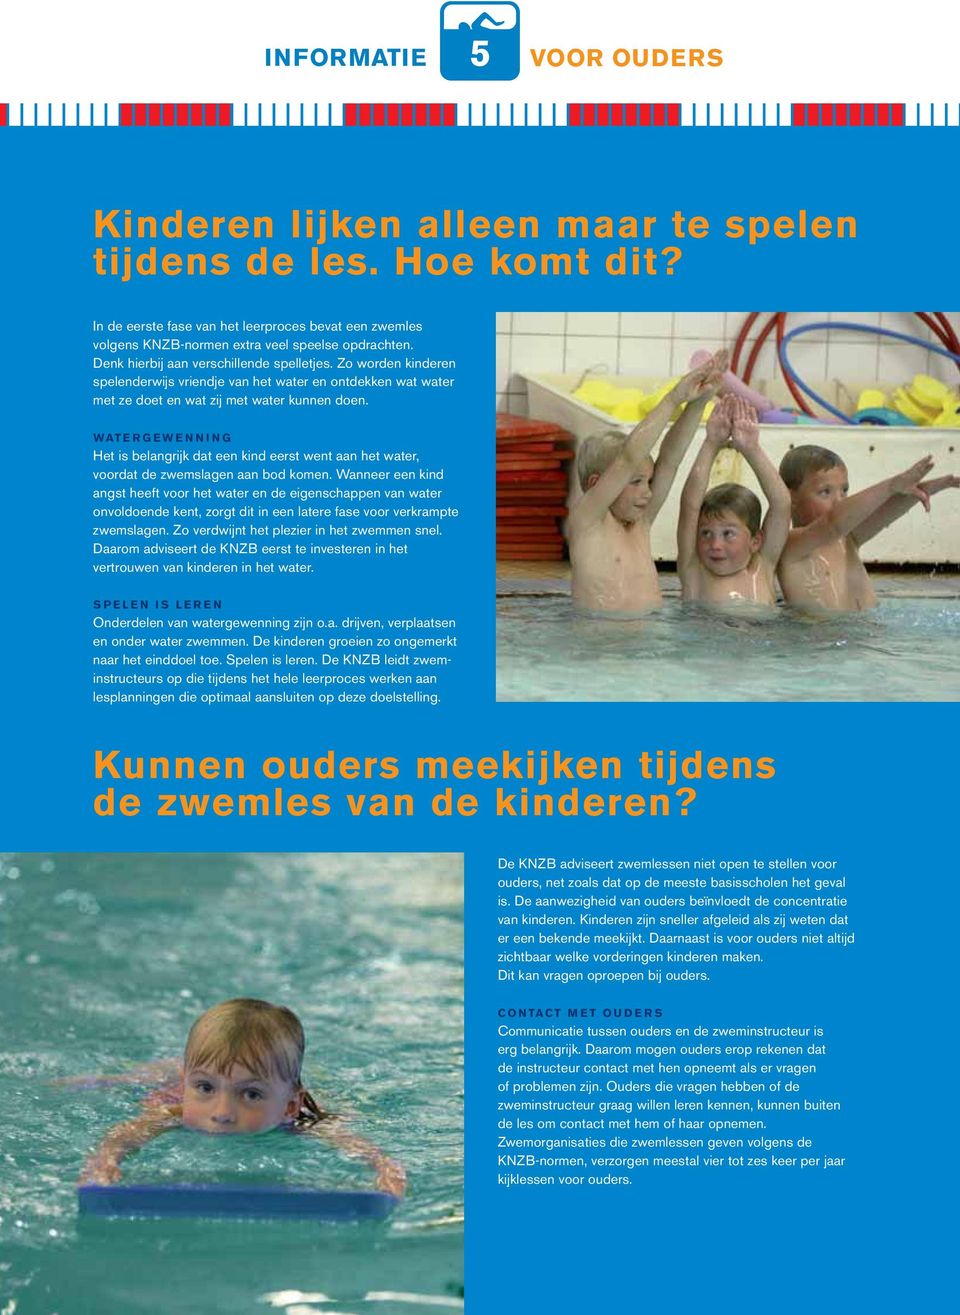 WATERGEWENNING Het is belangrijk dat een kind eerst went aan het water, voordat de zwemslagen aan bod komen.